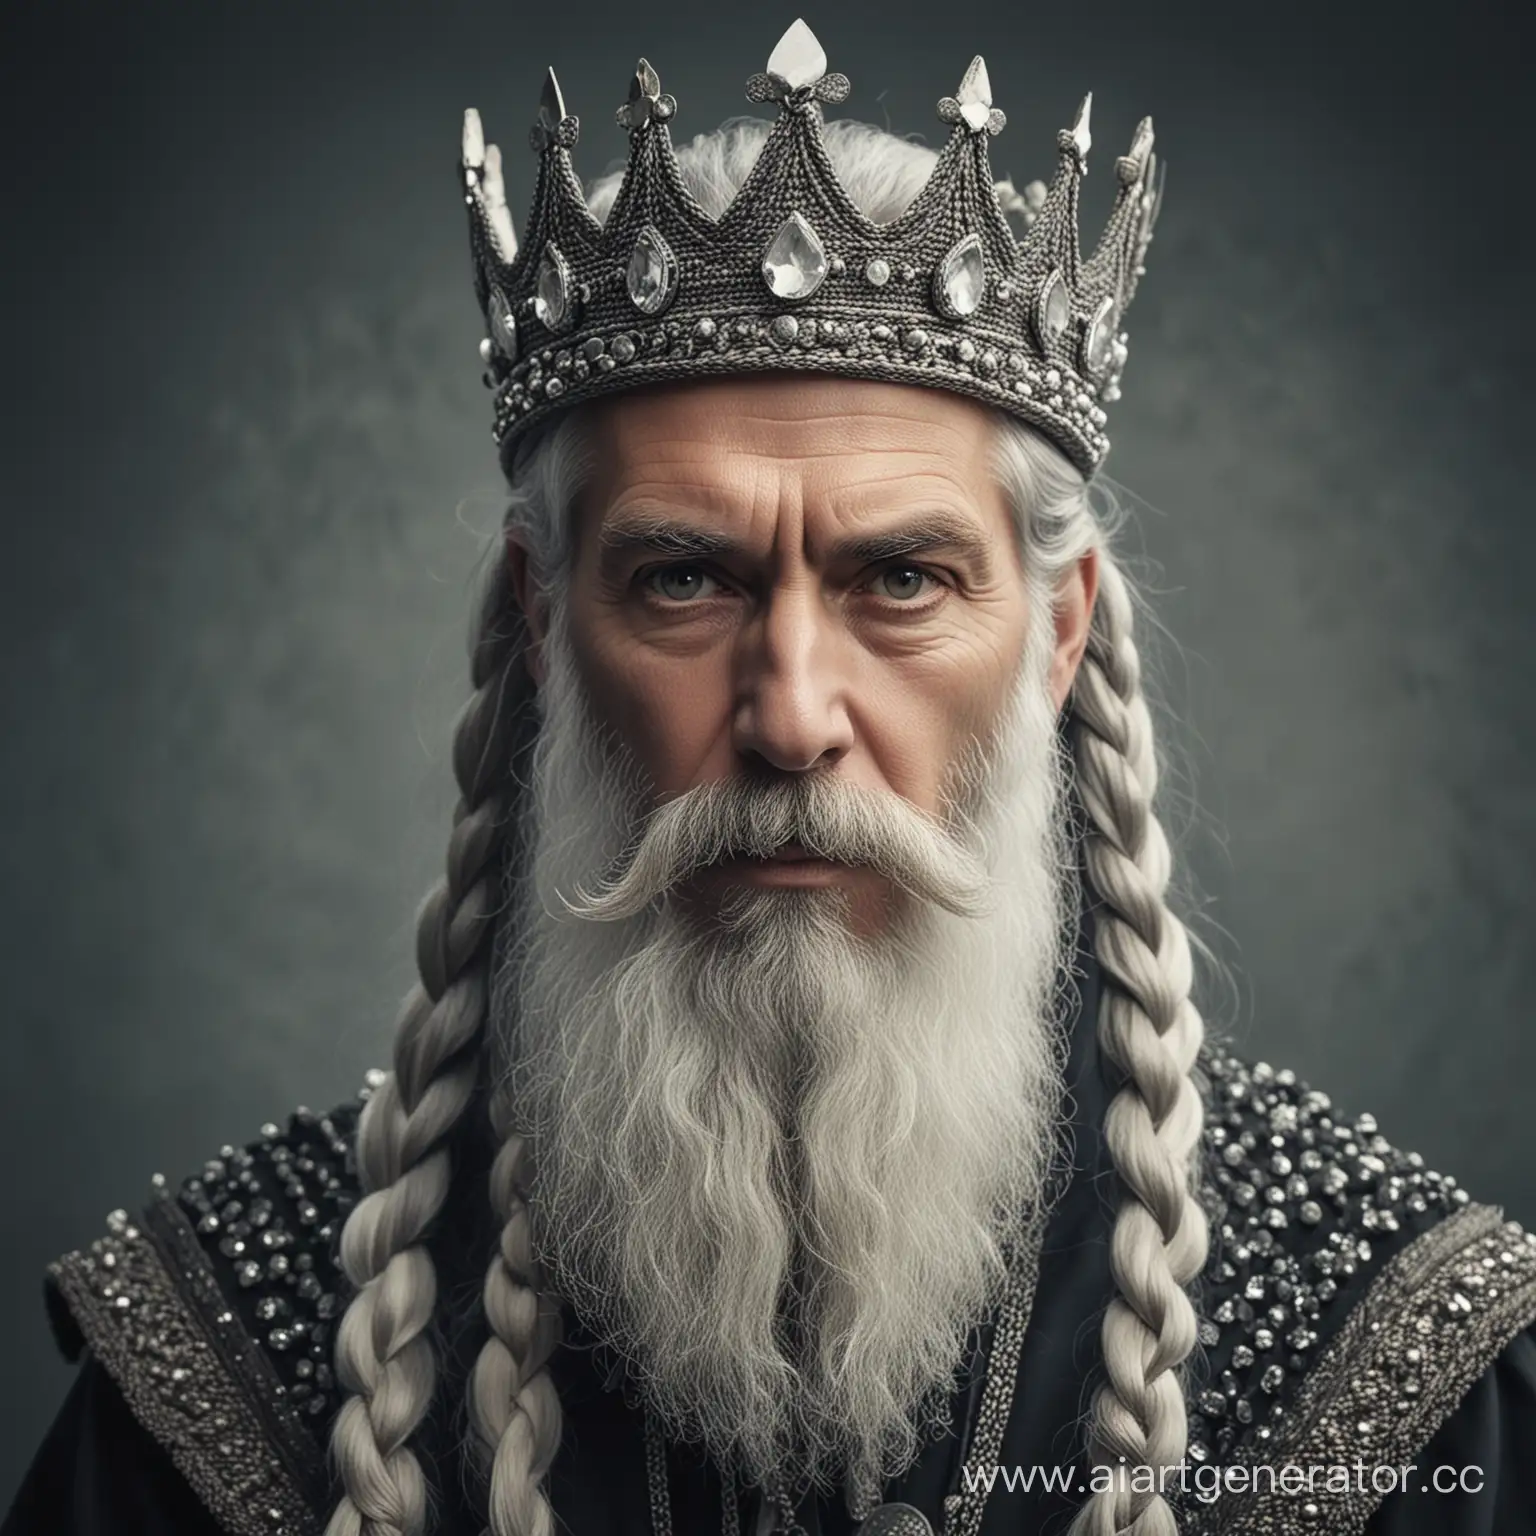 Портрет седого мужчины с длинной бородой, сплетенной в косы. На его голове тяжелая корона, украшенная белыми камнями. У мужчины грозный прямой взгляд. Холодные тона, низкий контраст.